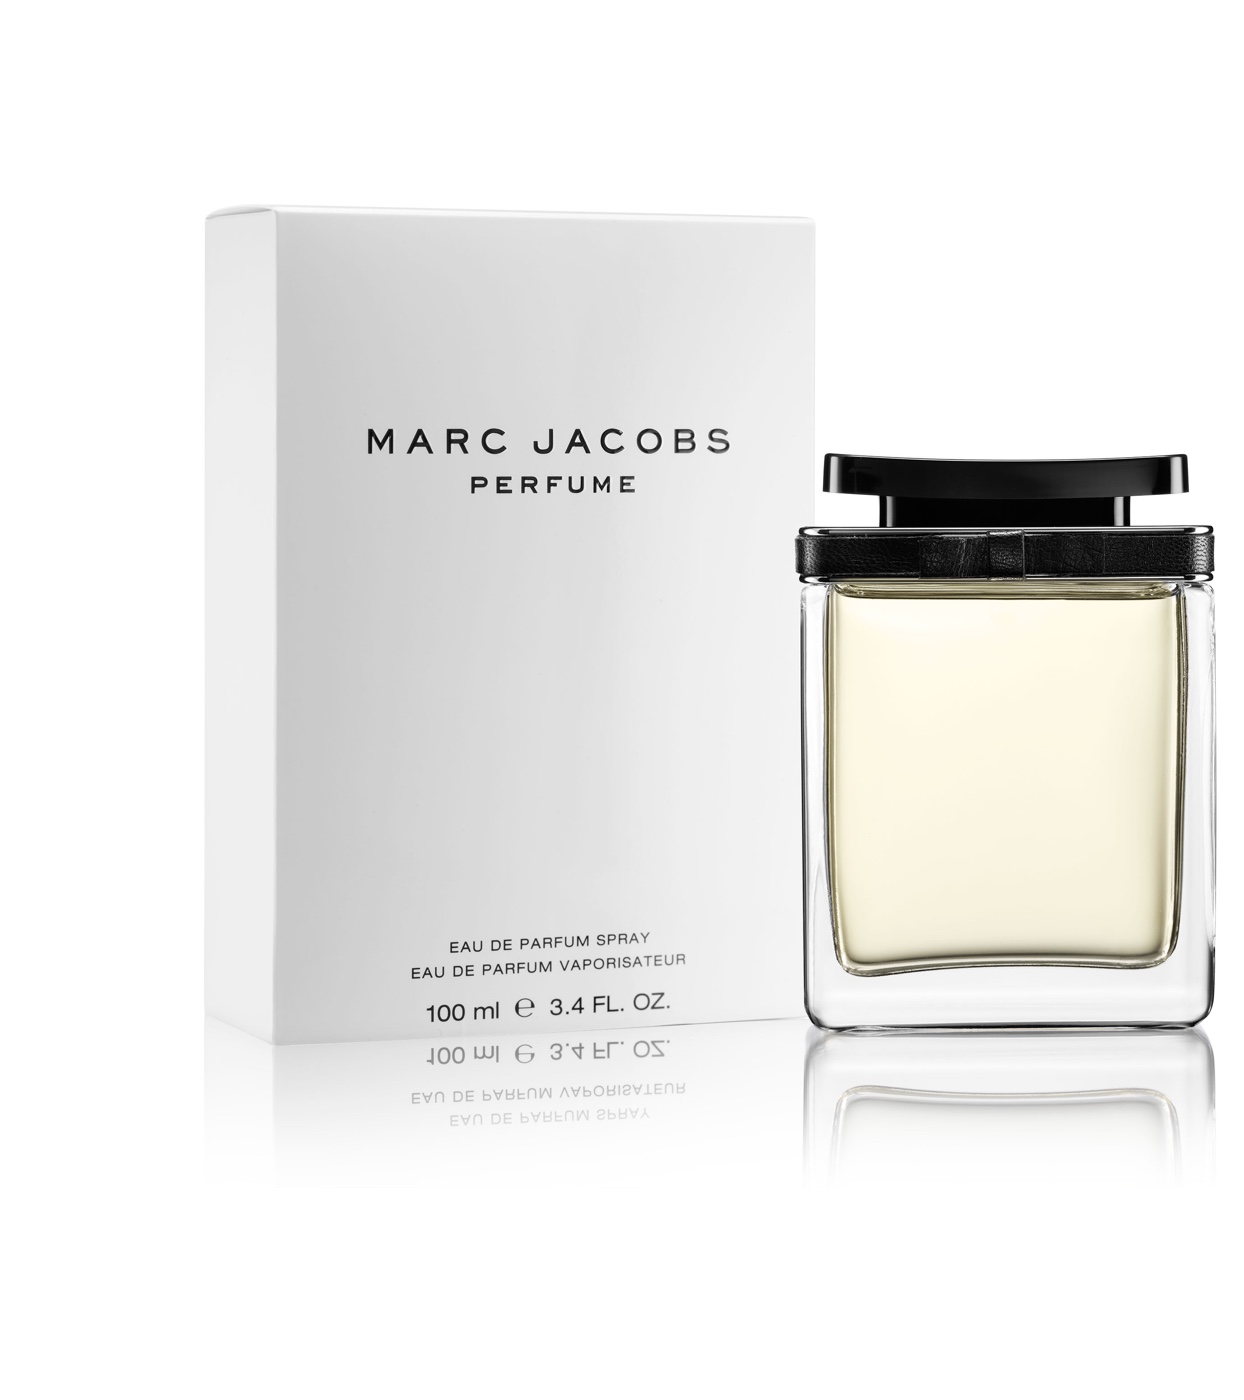 Uiterlijk Voorbijganger as Marc Jacobs Perfume